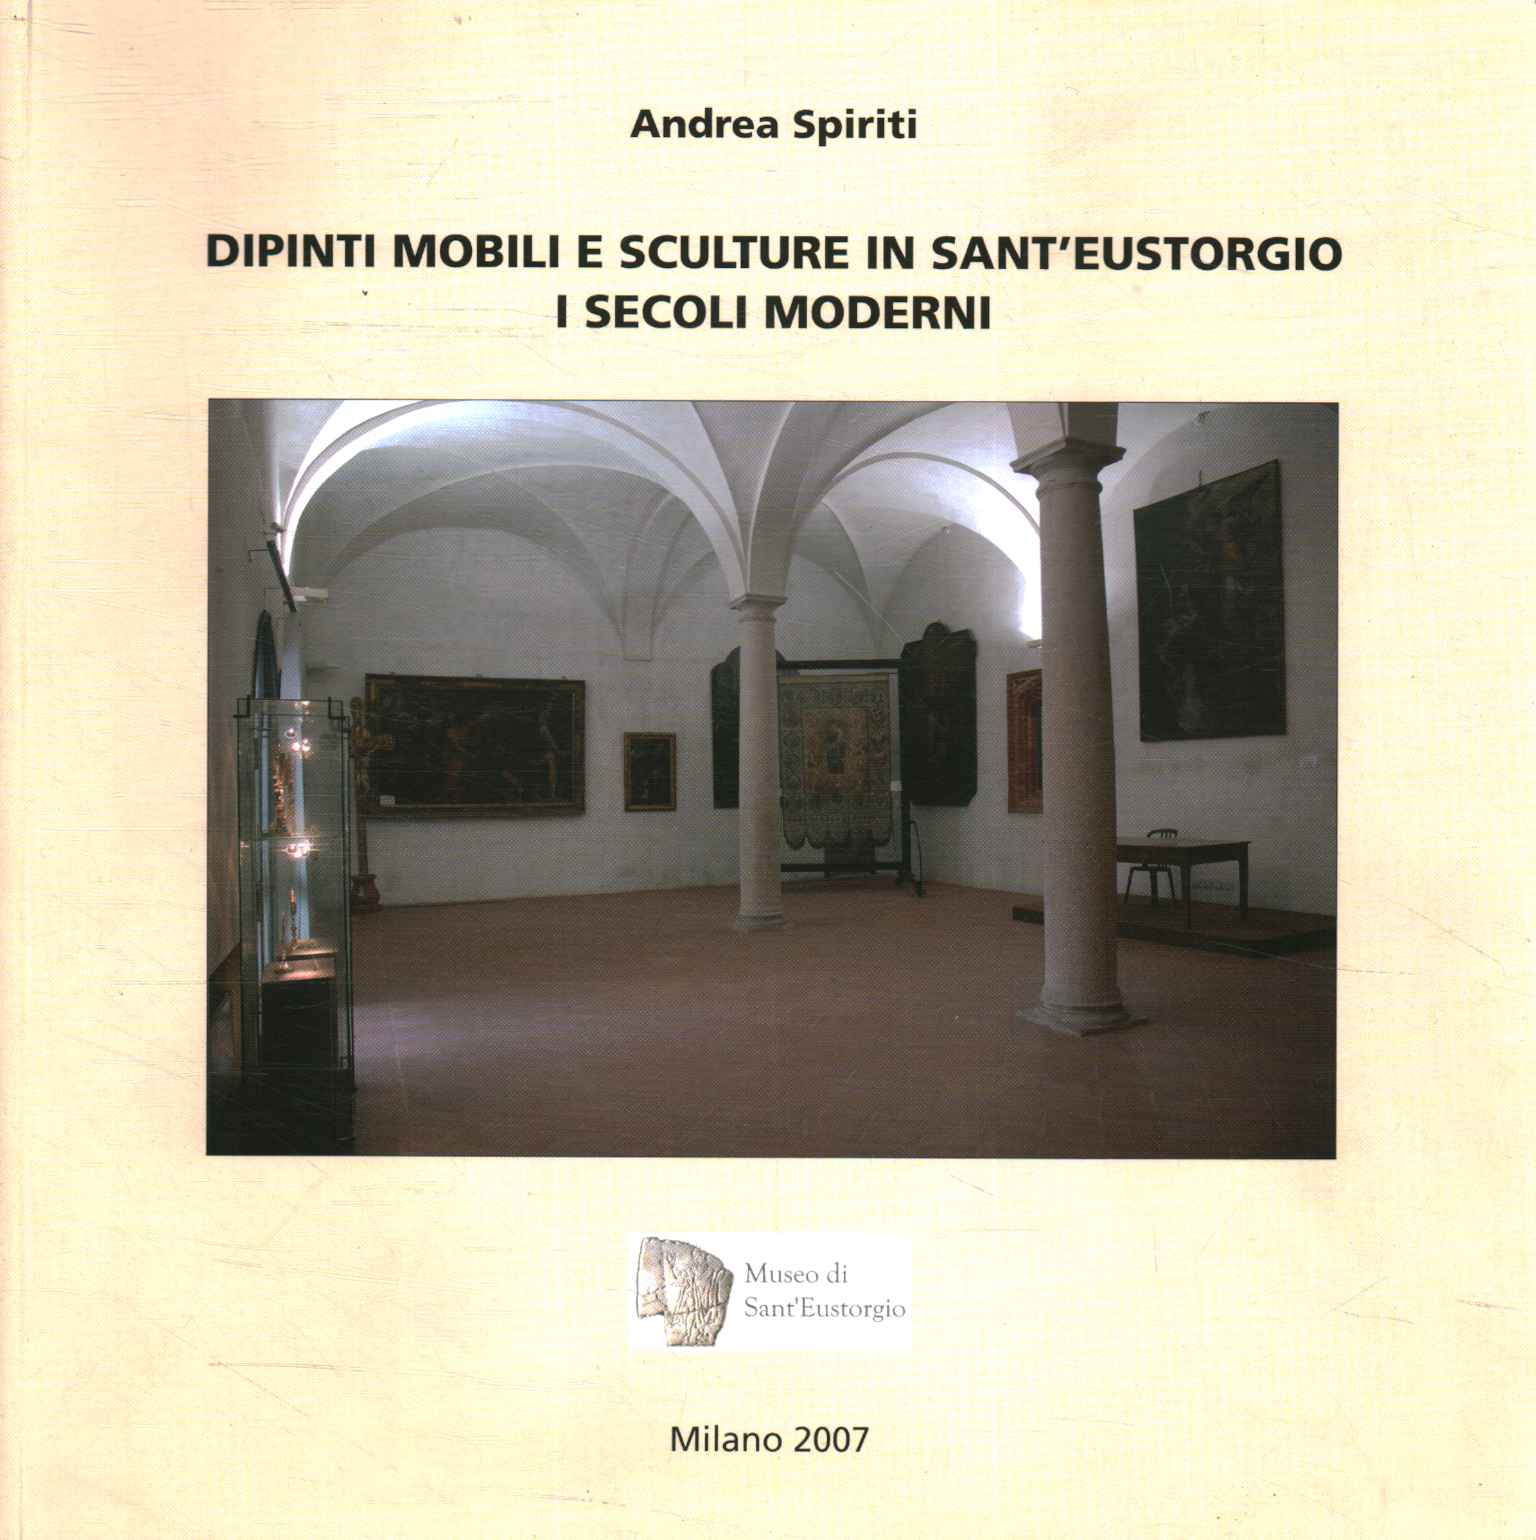 Peintures et sculptures mobiles à Sant0apostr